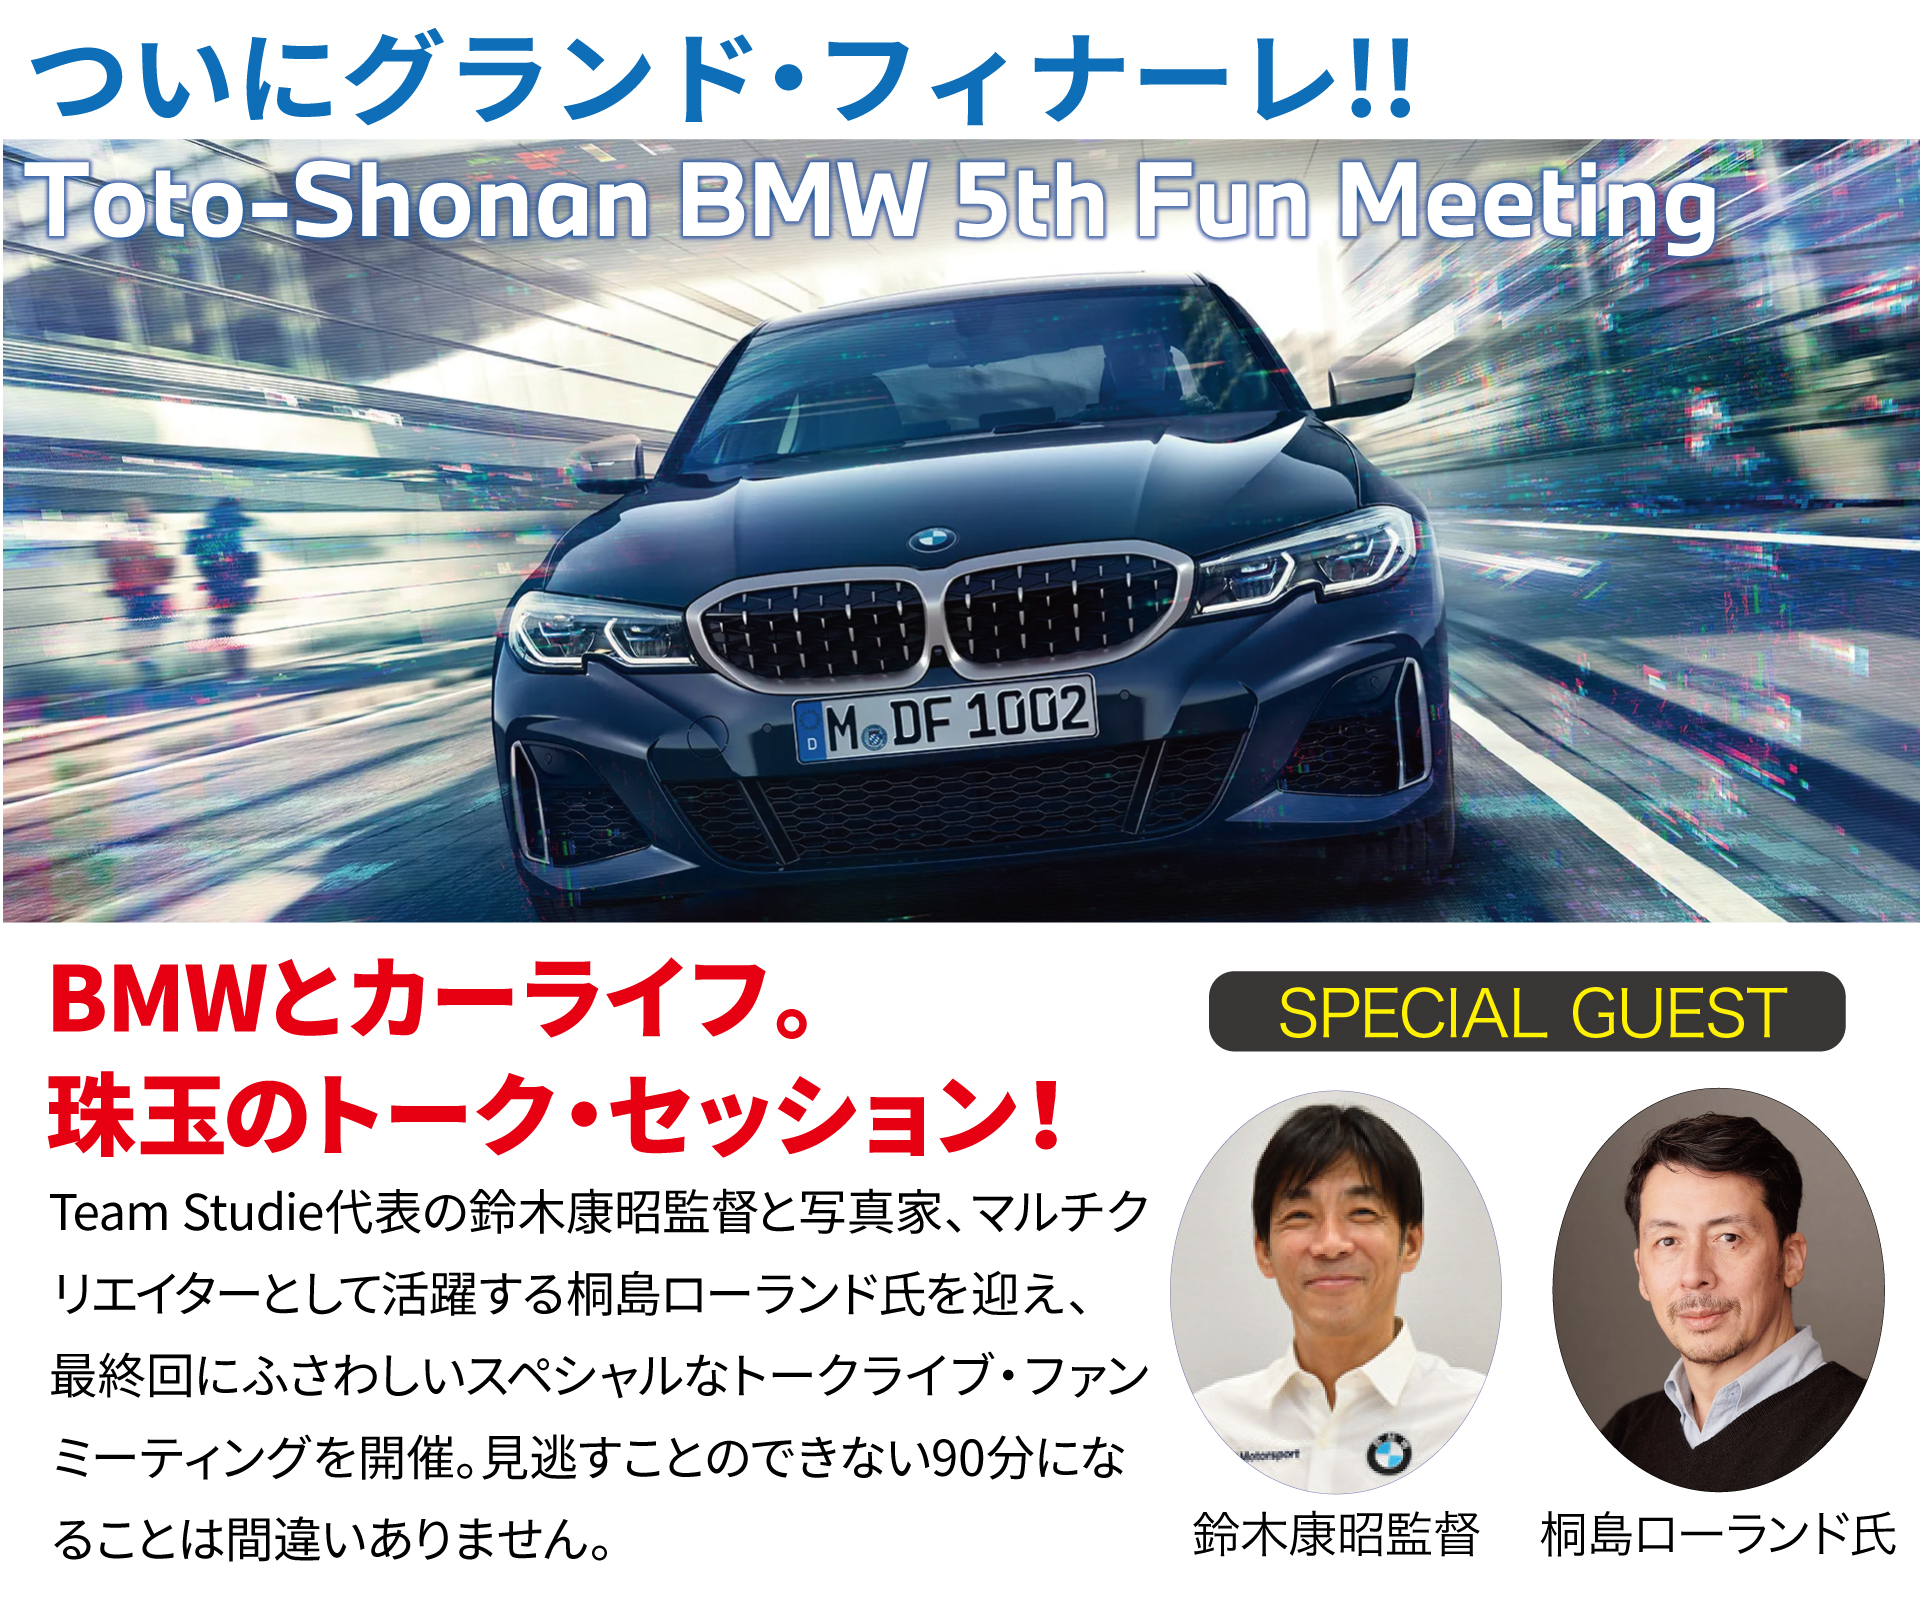 Toto & Shonan BMW Presents BMW Team Studie 5th Fun Meeting